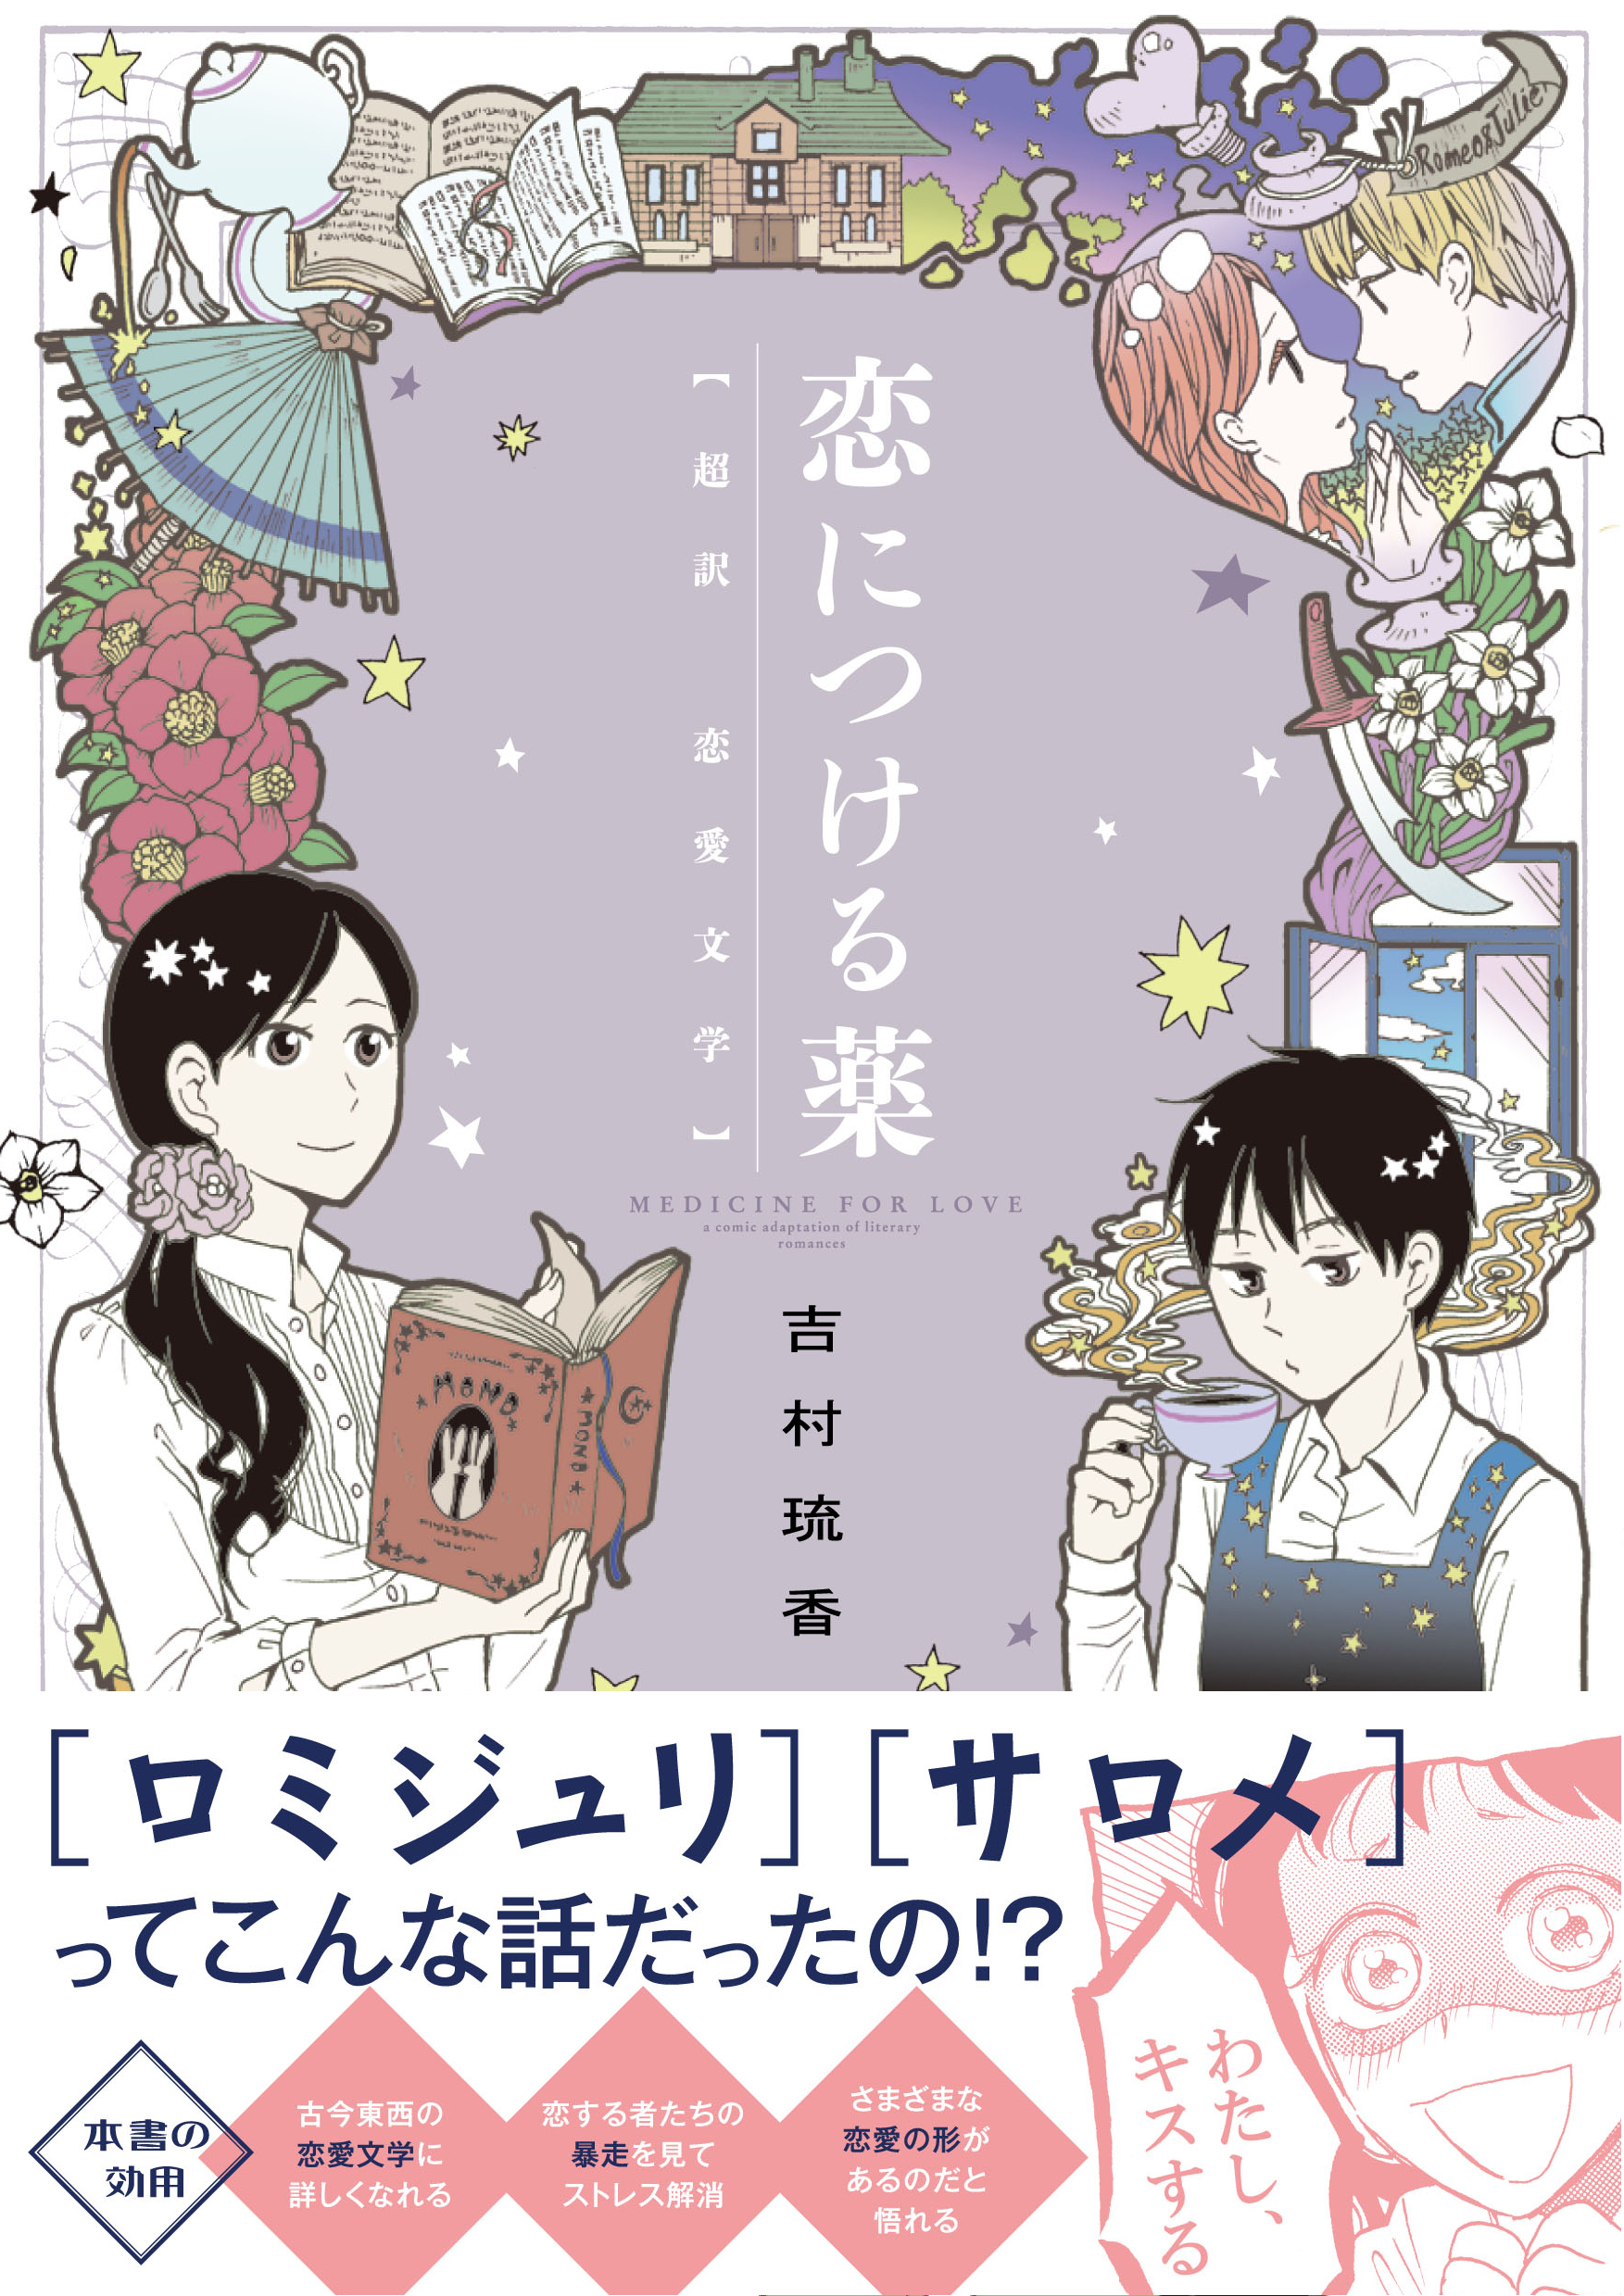 ロミジュリ サロメ ってこんな話だったの 名作恋愛文学のイメージを覆すコミックエッセイ 株式会社kadokawaのプレスリリース